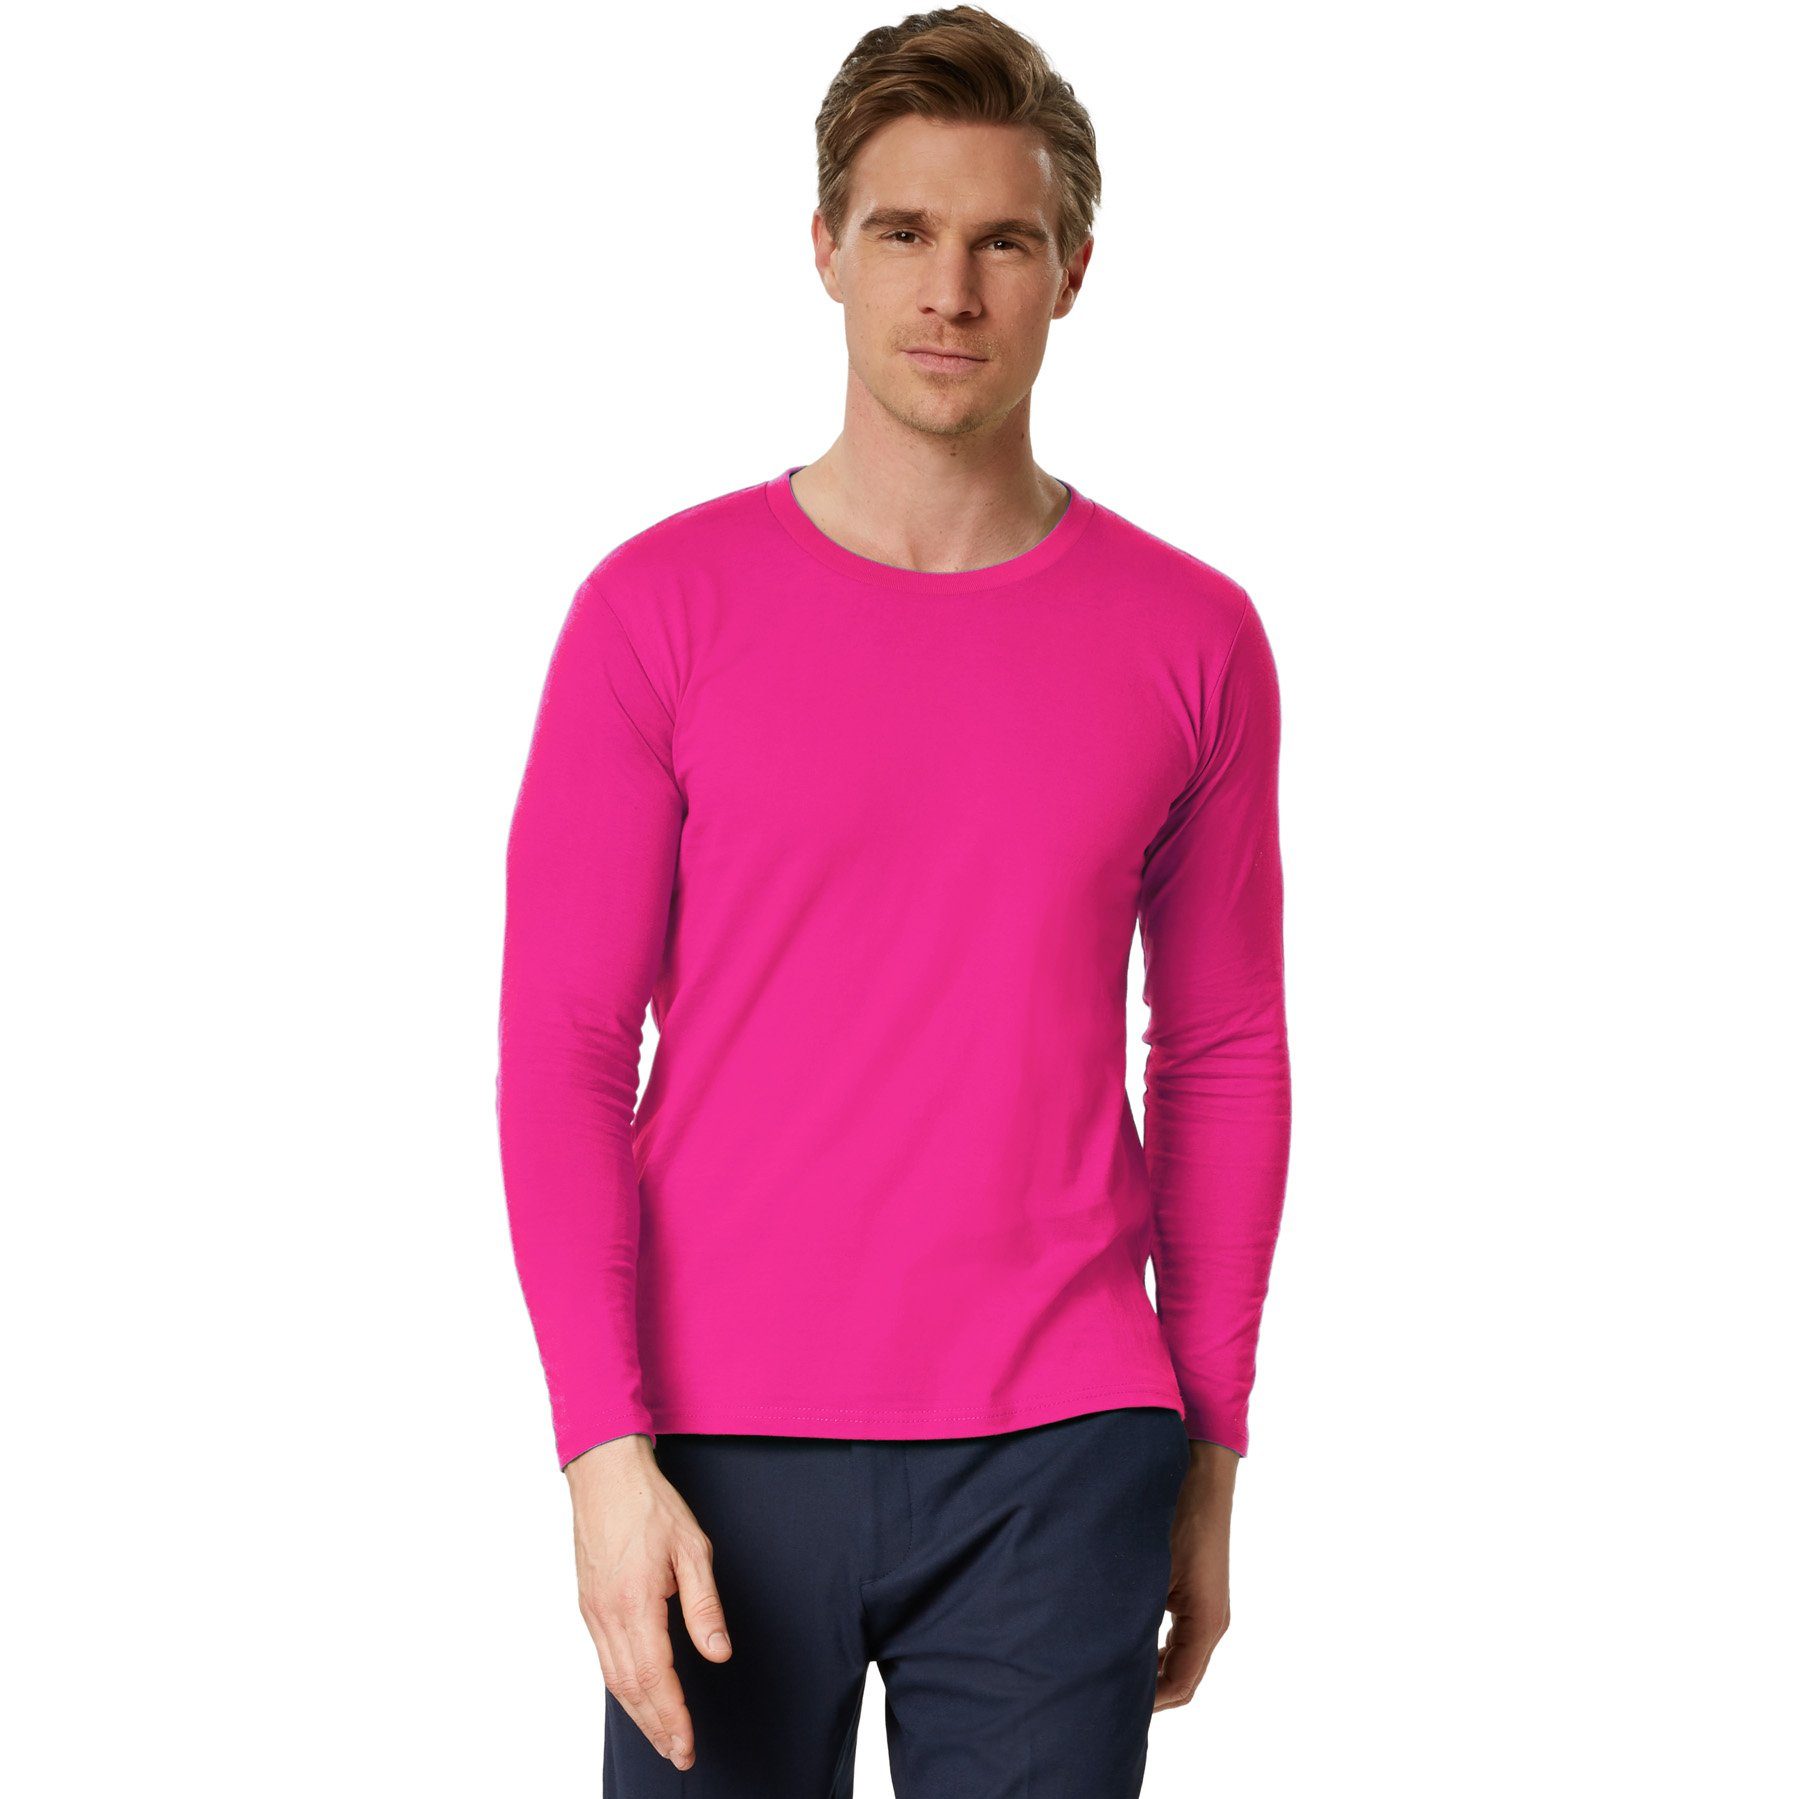 dressforfun Longsleeve Langarm-Shirt Männer Rundhals pink